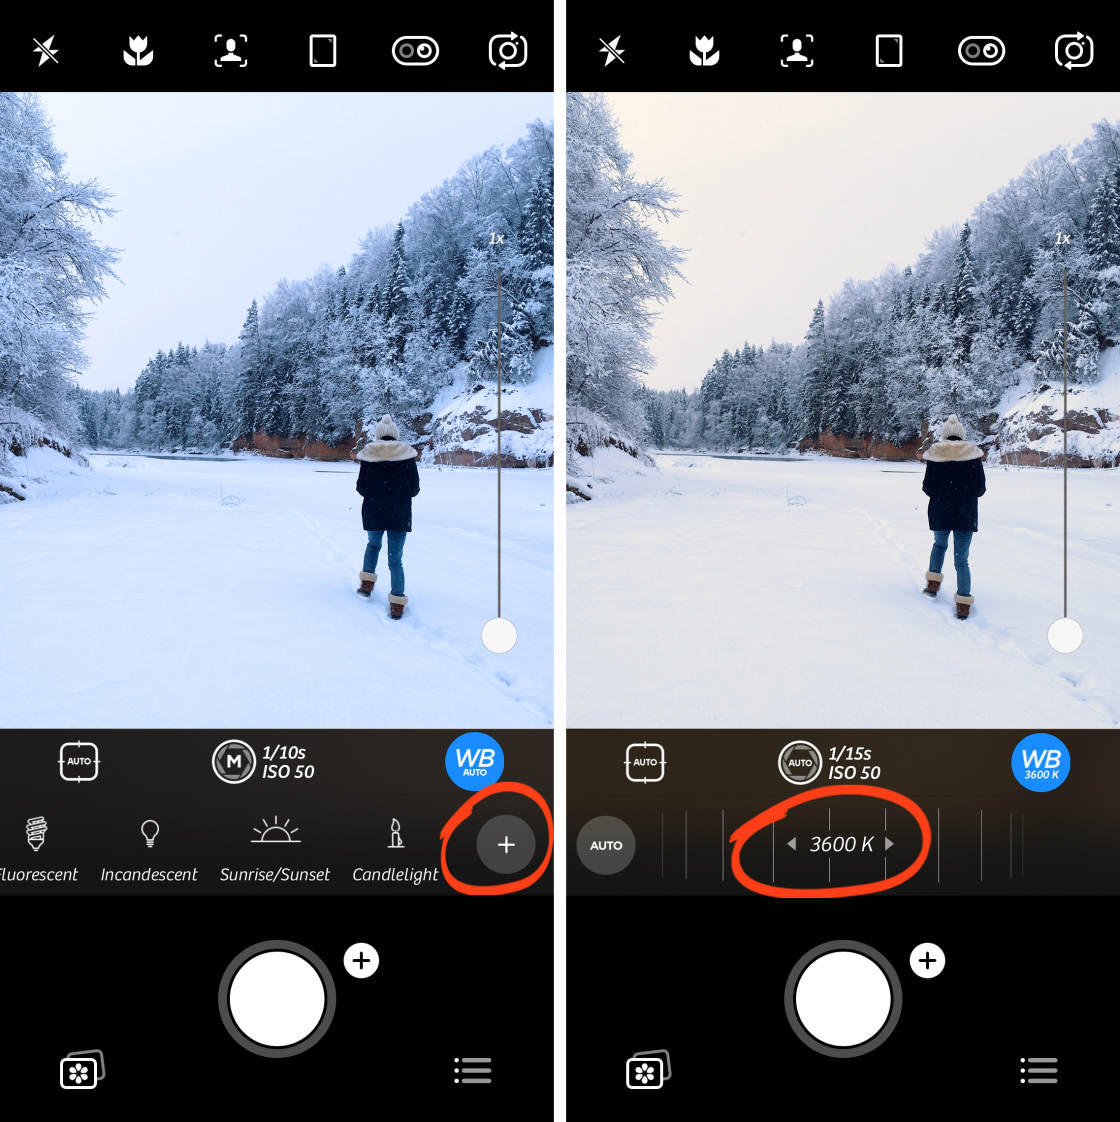 Как настроить камеру телефона для идеальных фото андроид